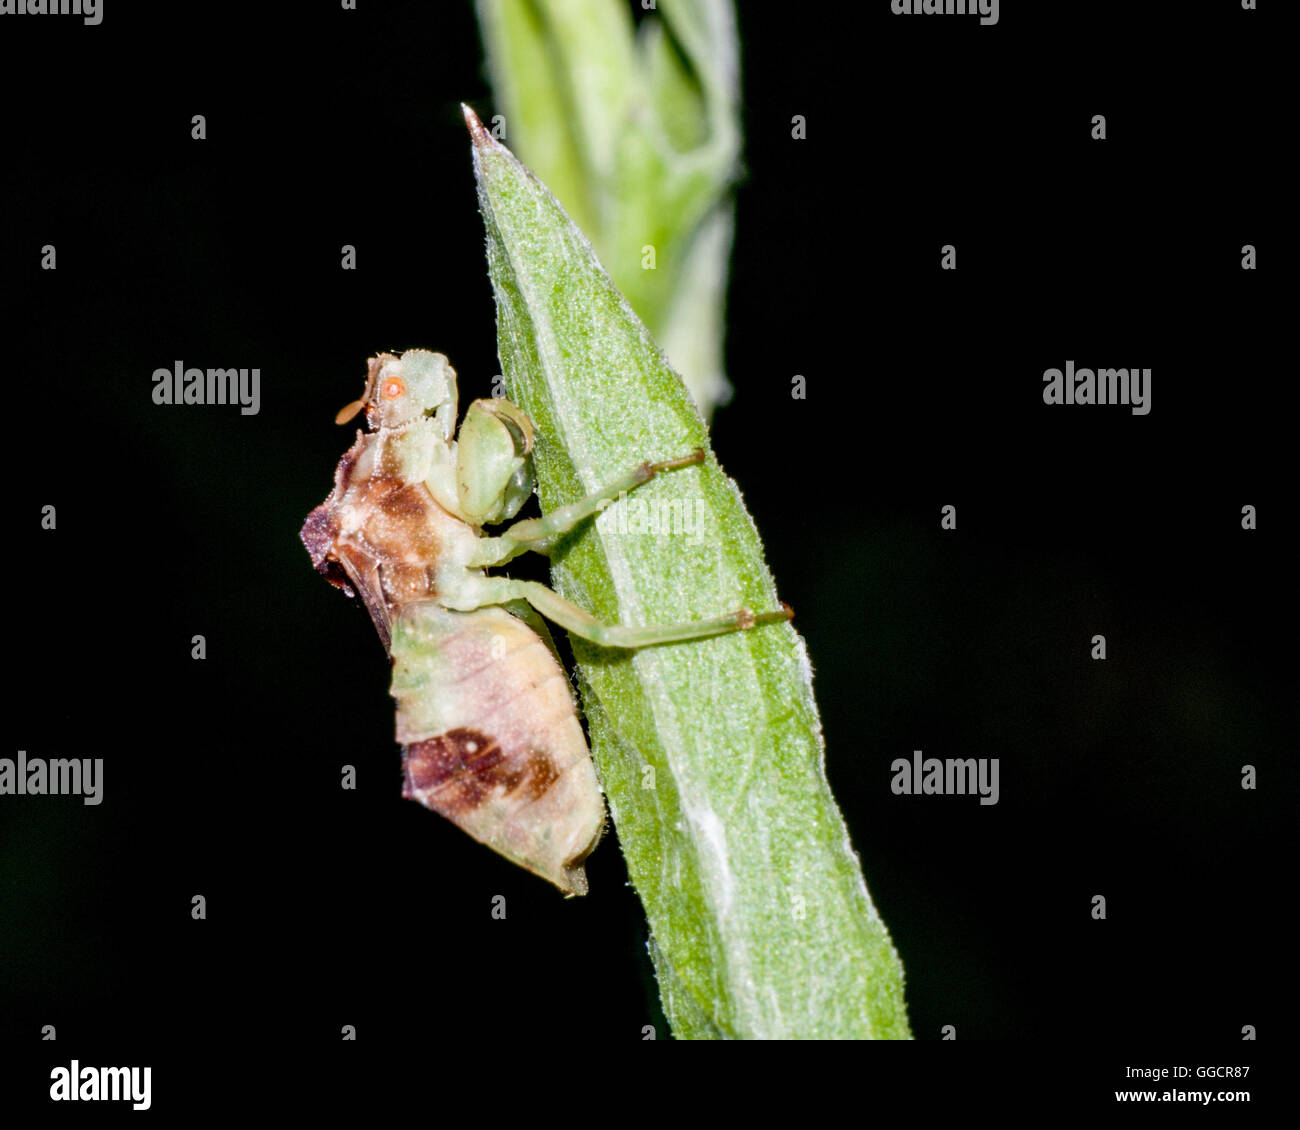 Una emboscada Bug encaramado sobre una planta de tallo. Foto de stock